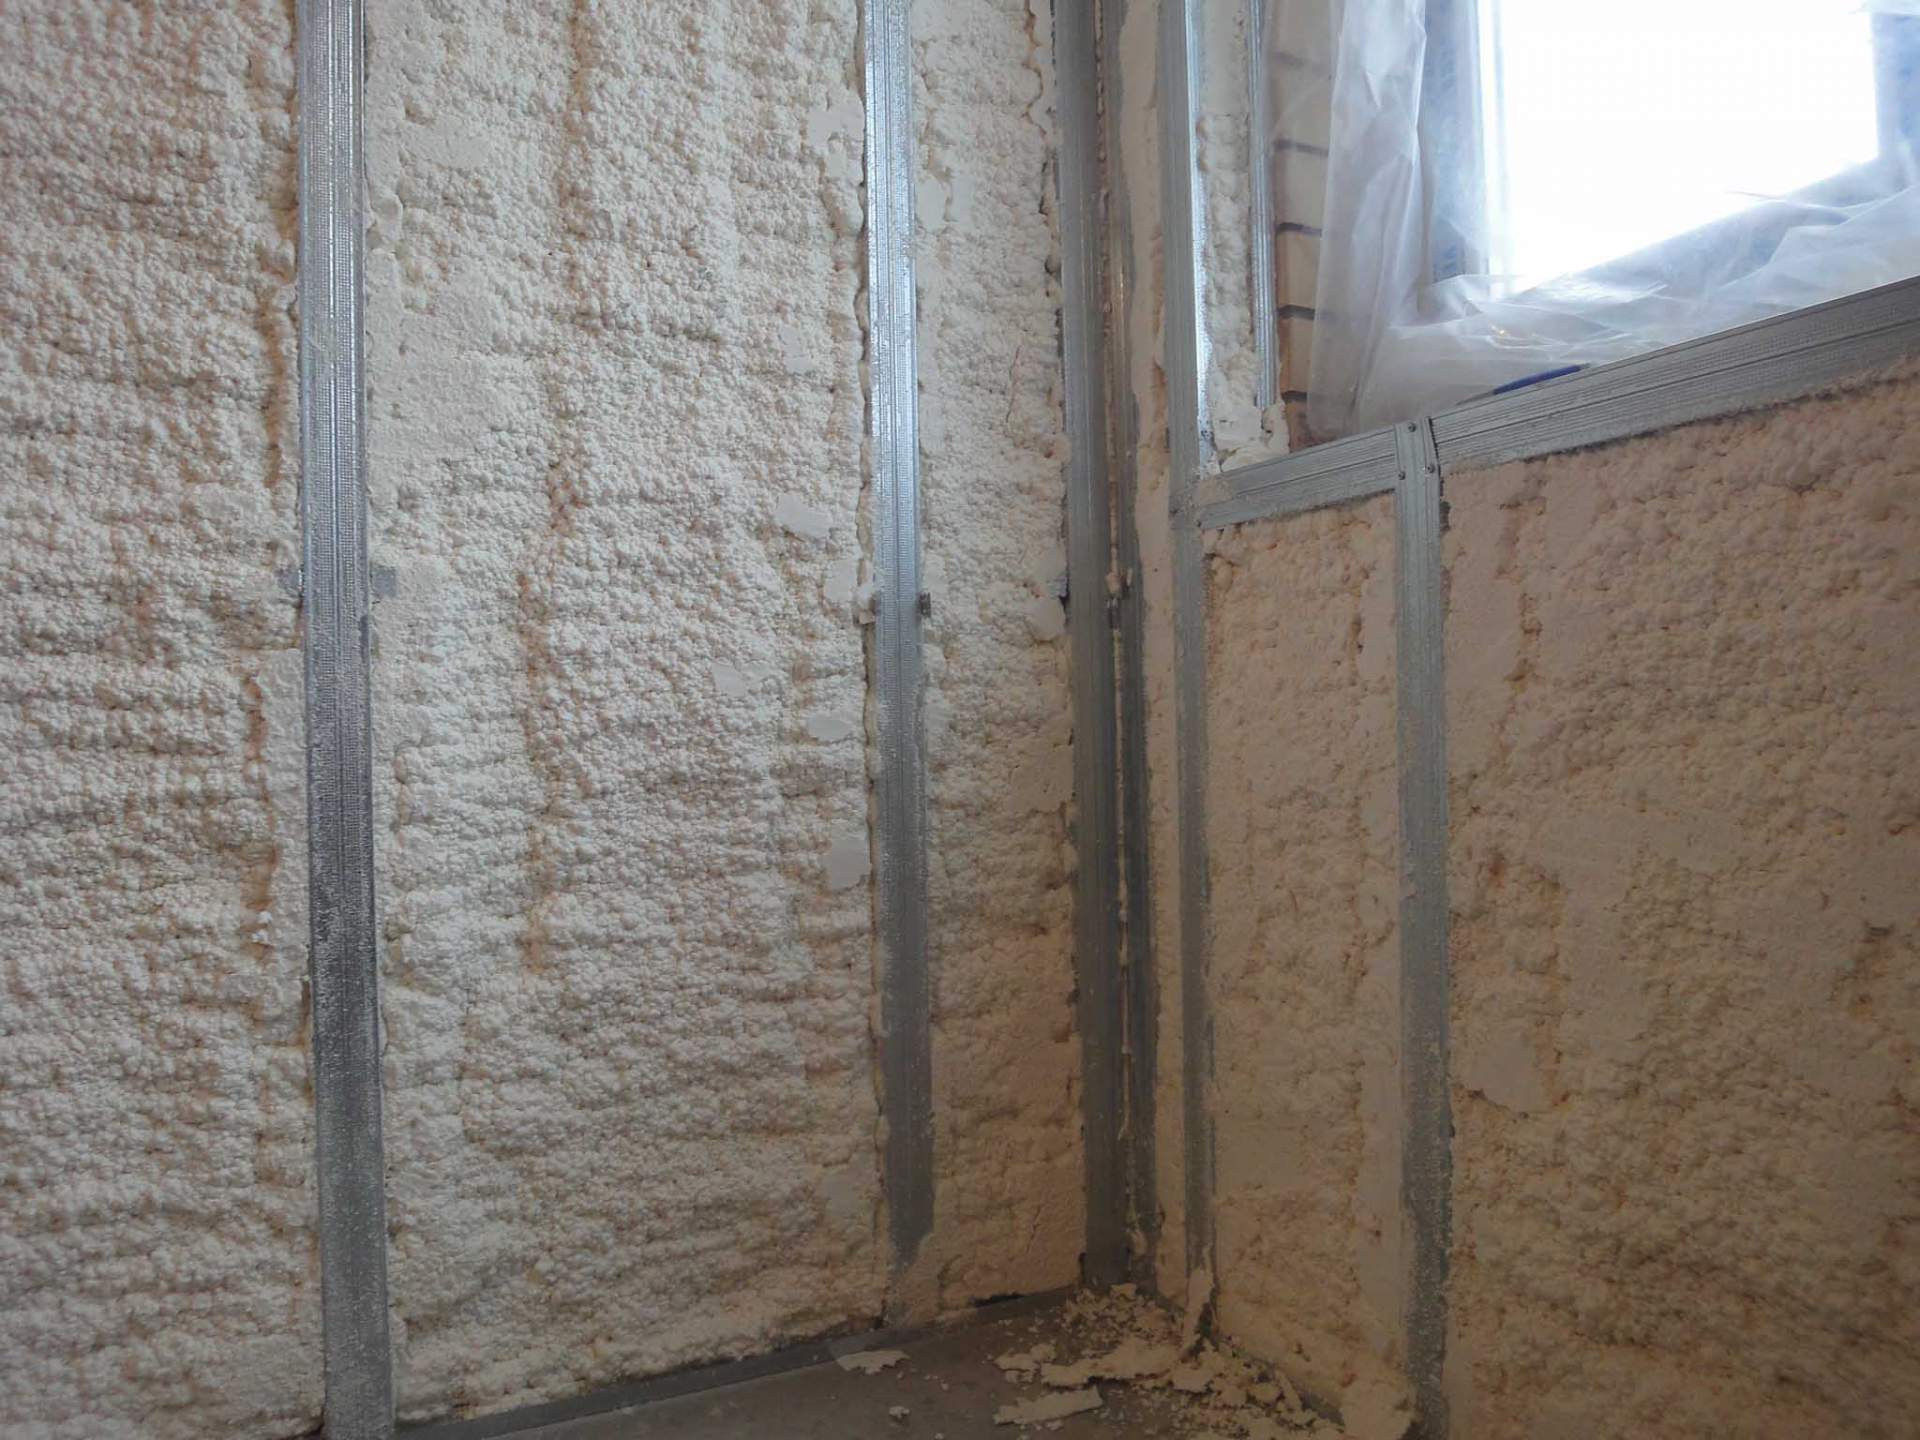 Утепление стен пенополиуретаном (ппу) снаружи и изнутри дома своими руками - подробно и по шагам